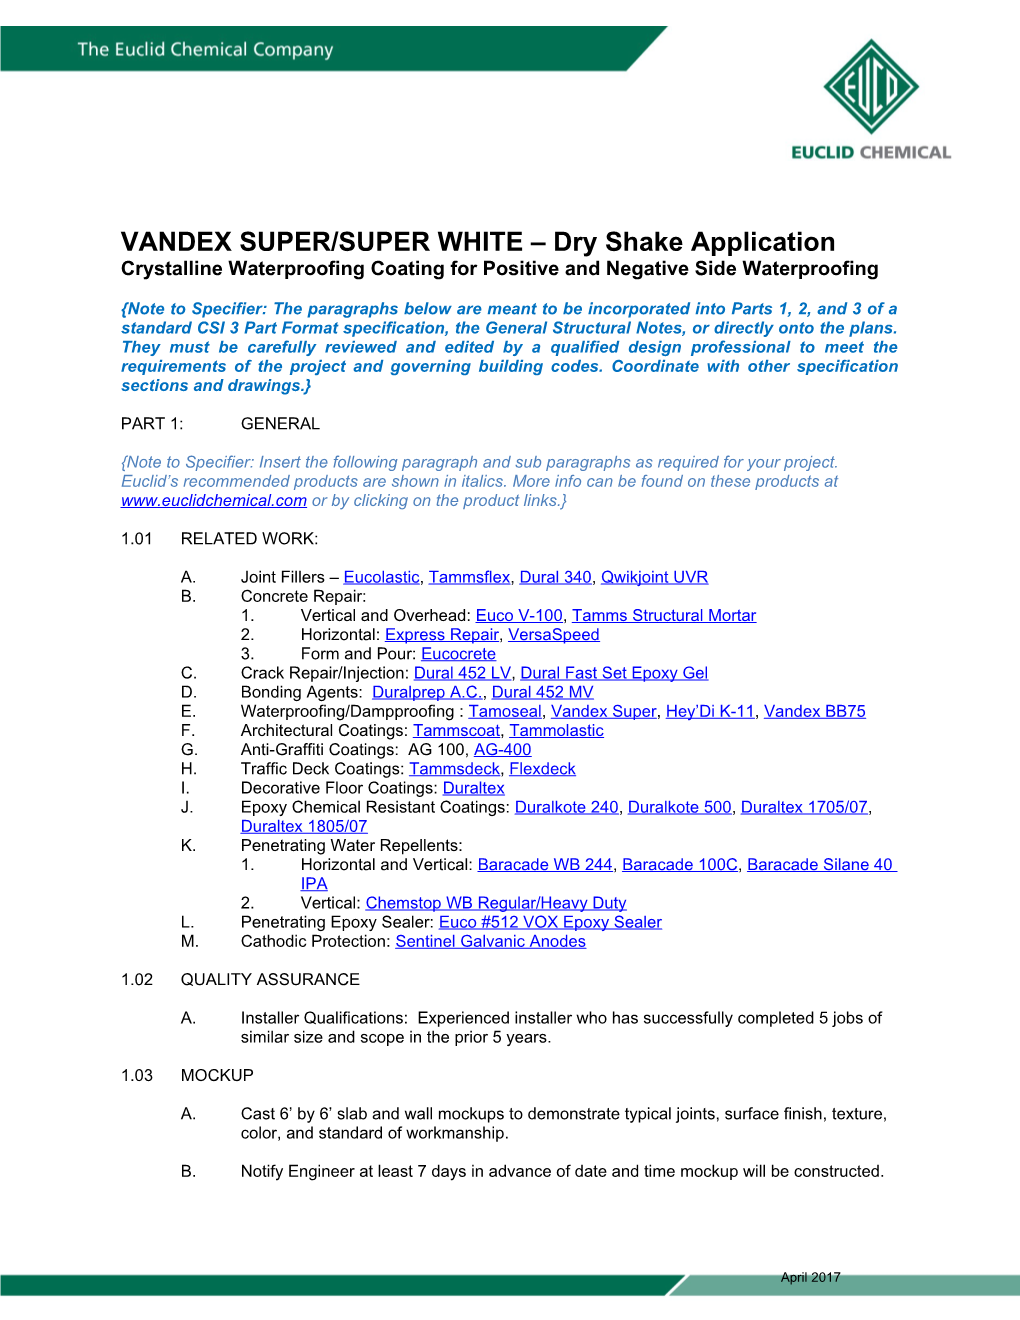 VANDEX SUPER/SUPER WHITE Dry Shake Application